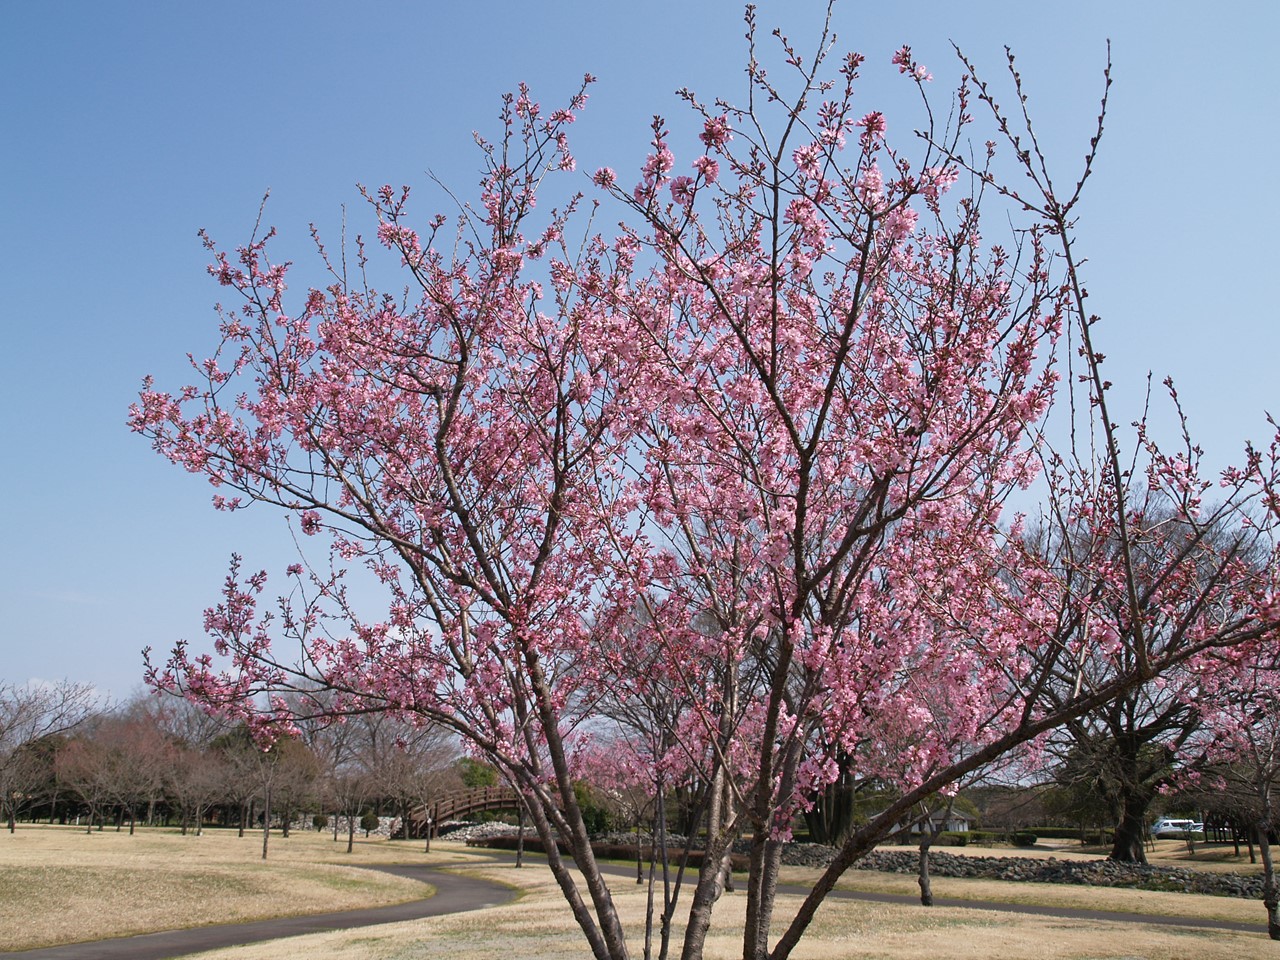 彼岸桜 ヒガンザクラ と紫雲英 ゲンゲ と木五倍子 キブシ と白花沈丁花 シロバナジンチョウゲ 自然風の自然風だより